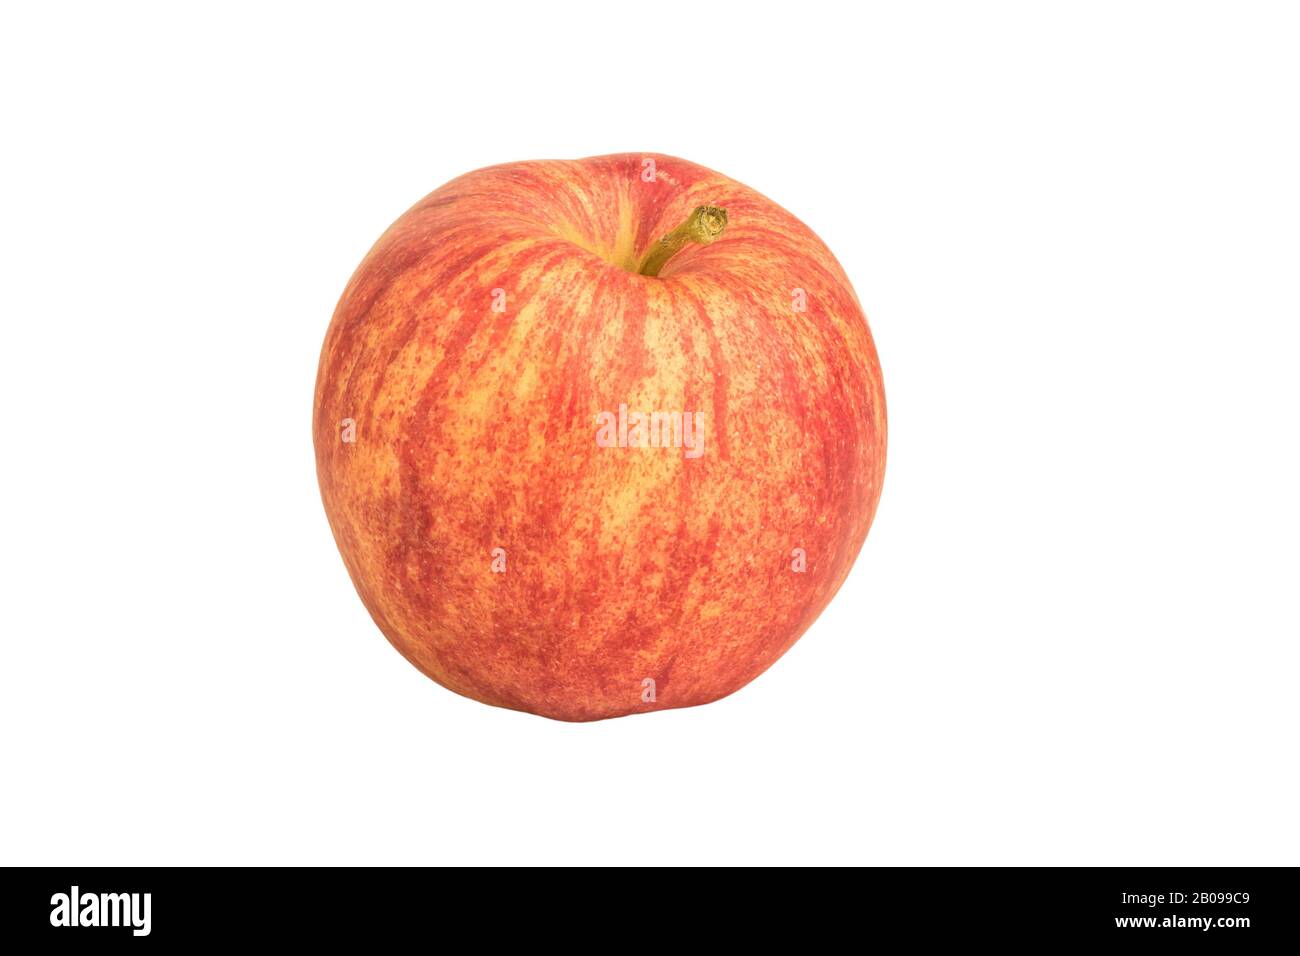 image d'une pomme mûre rouge-jaune avec queue sur fond blanc Banque D'Images